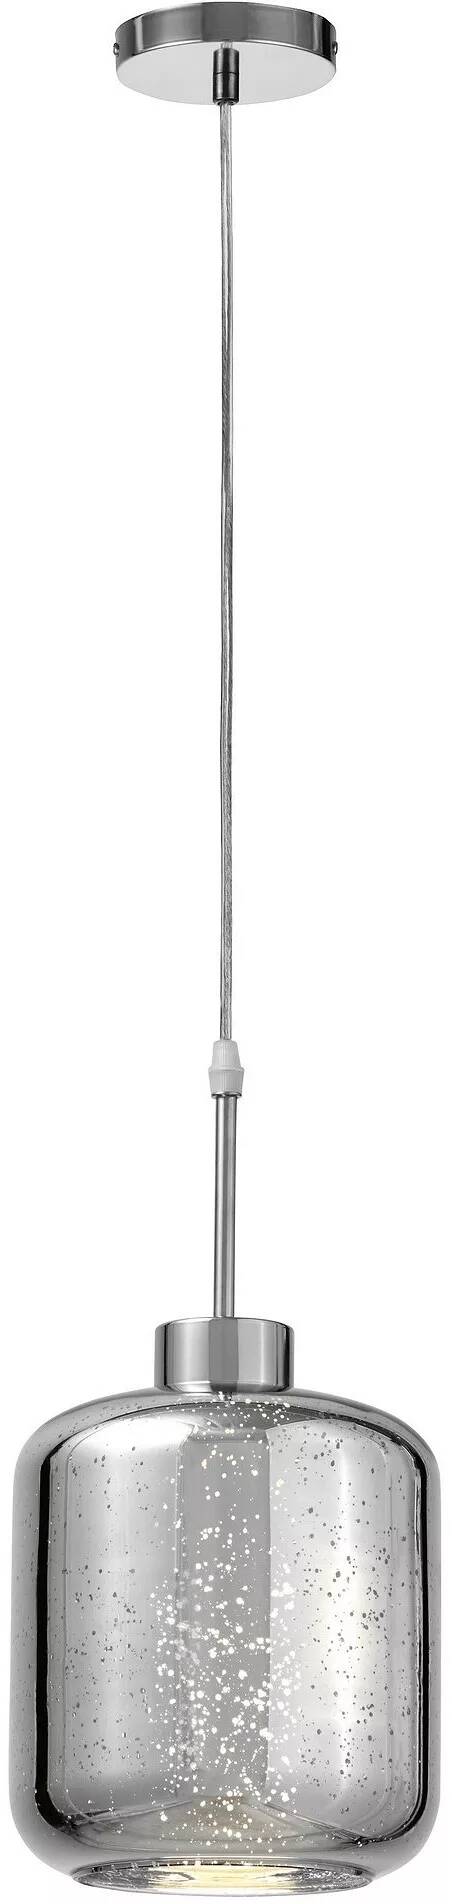 Lampe suspension en verre et métal chromé Ø18